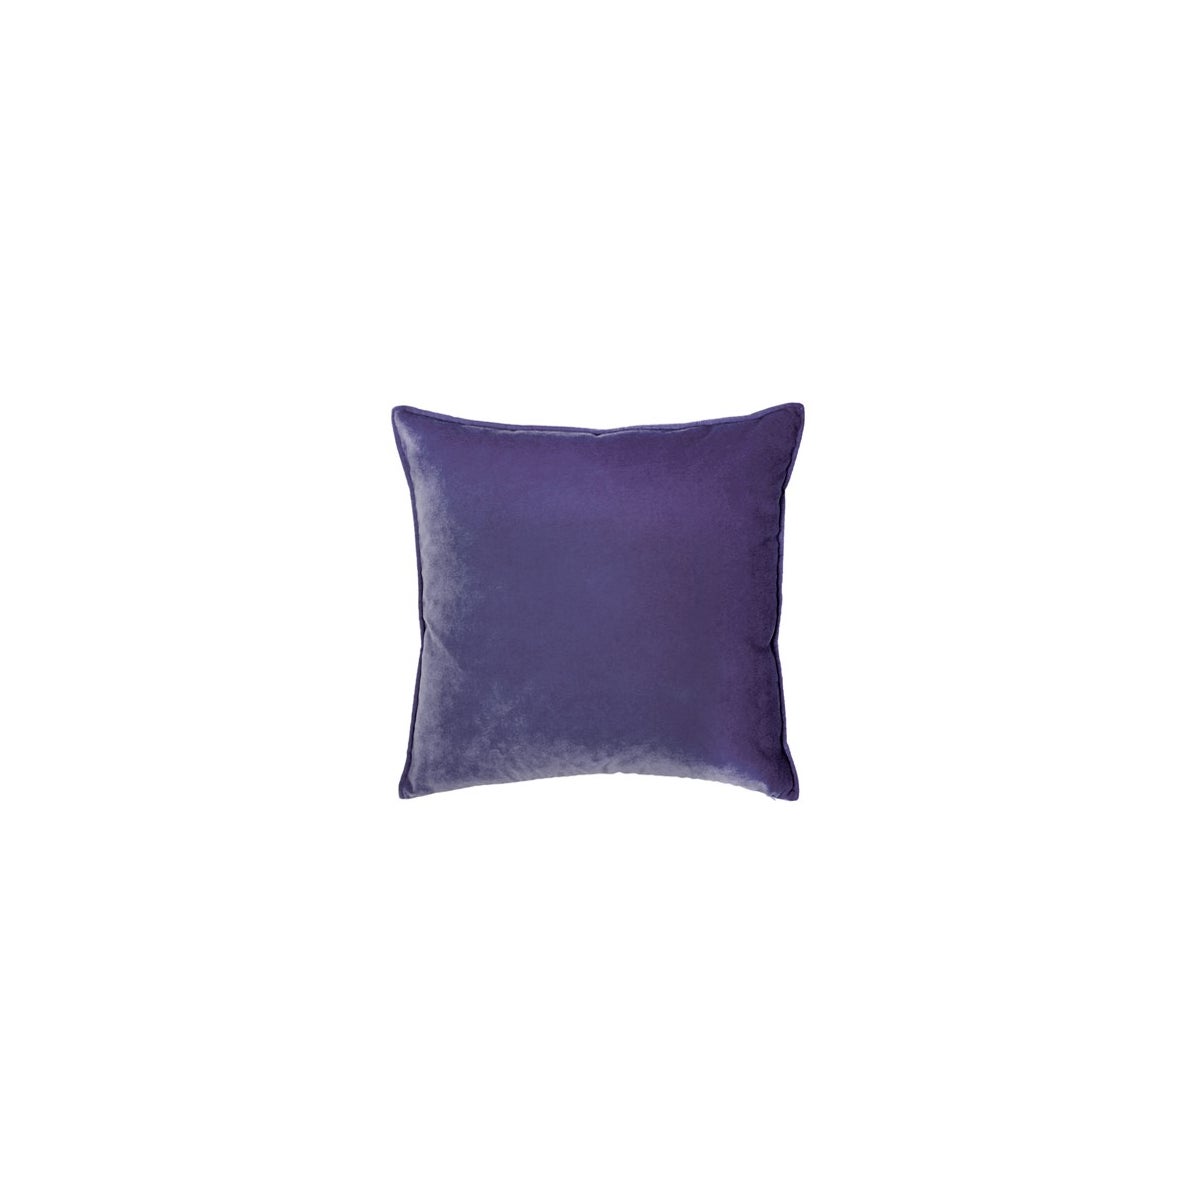 https://images.junipercdn.com/1144/franklin_velvet_deep_purple_pillow_lrg_lg.jpg?height=1200&width=1200&canvas=1200,1200&fit=bounds